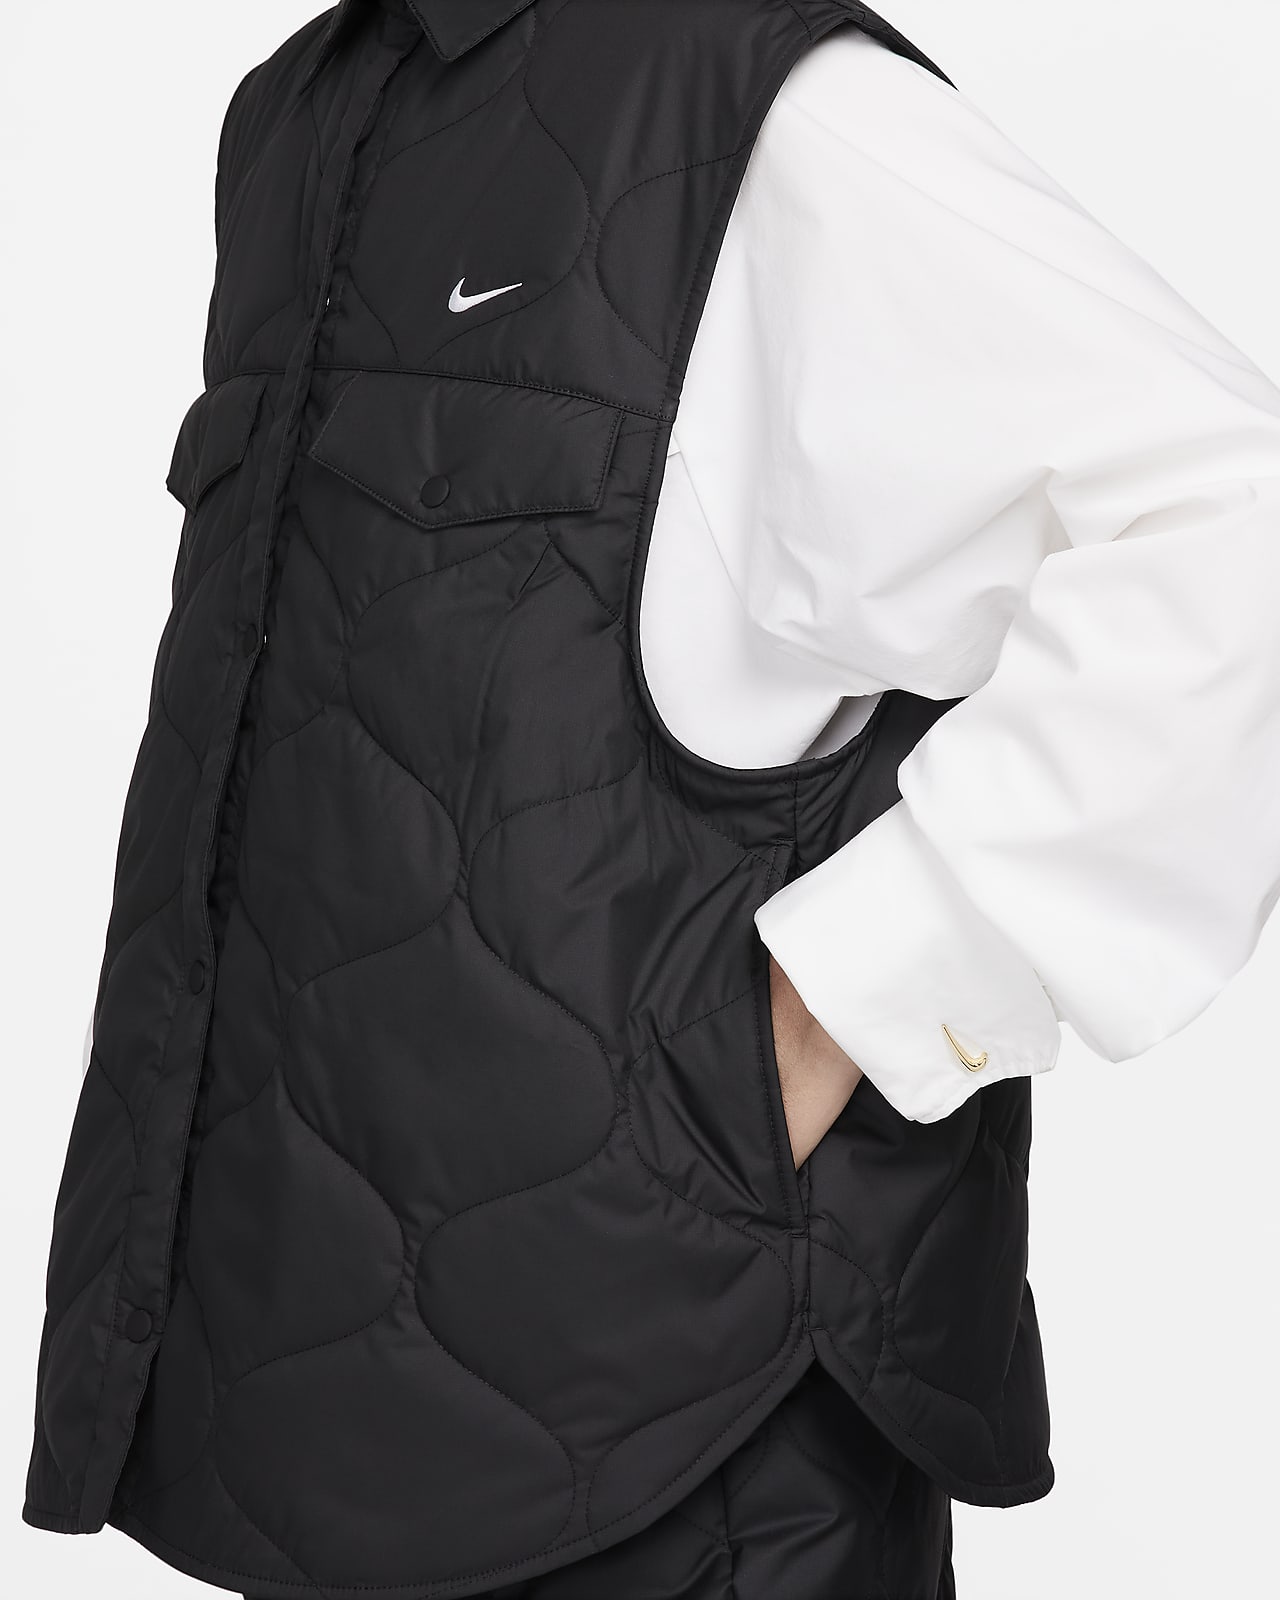 Sportswear Women\'s Vest. Essential Nike